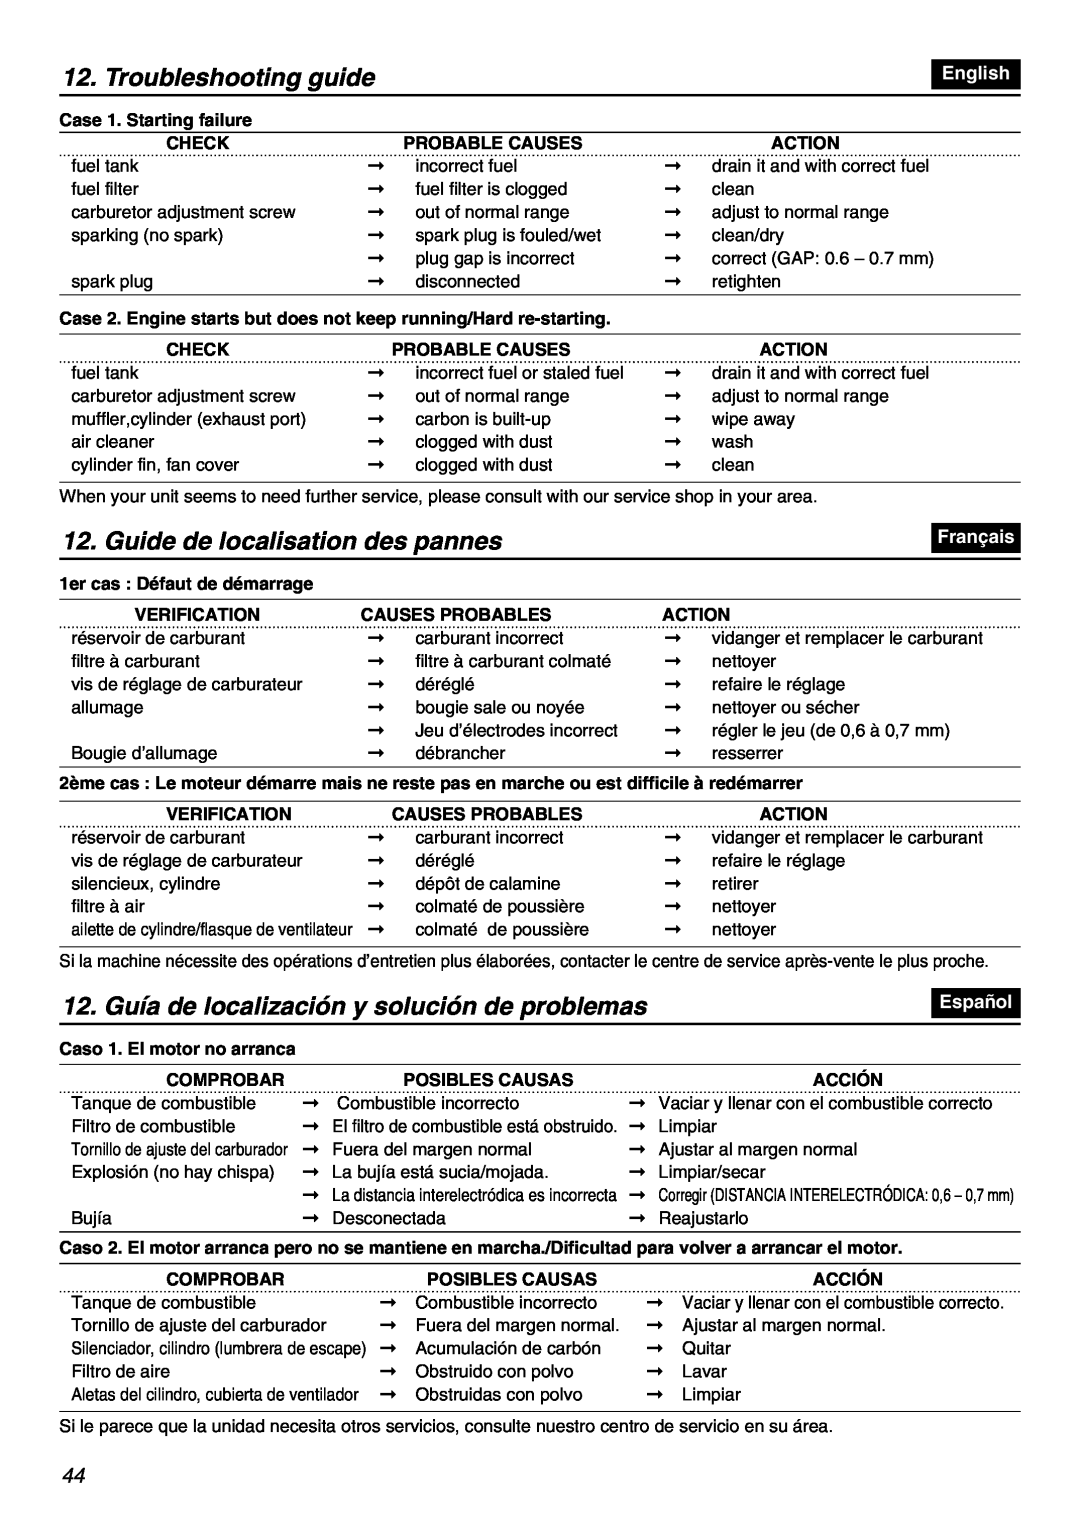 RedMax EBZ7001RH-CA, EBZ7001-CA manual Troubleshooting guide, Guide de localisation des pannes, English, Français, Español 